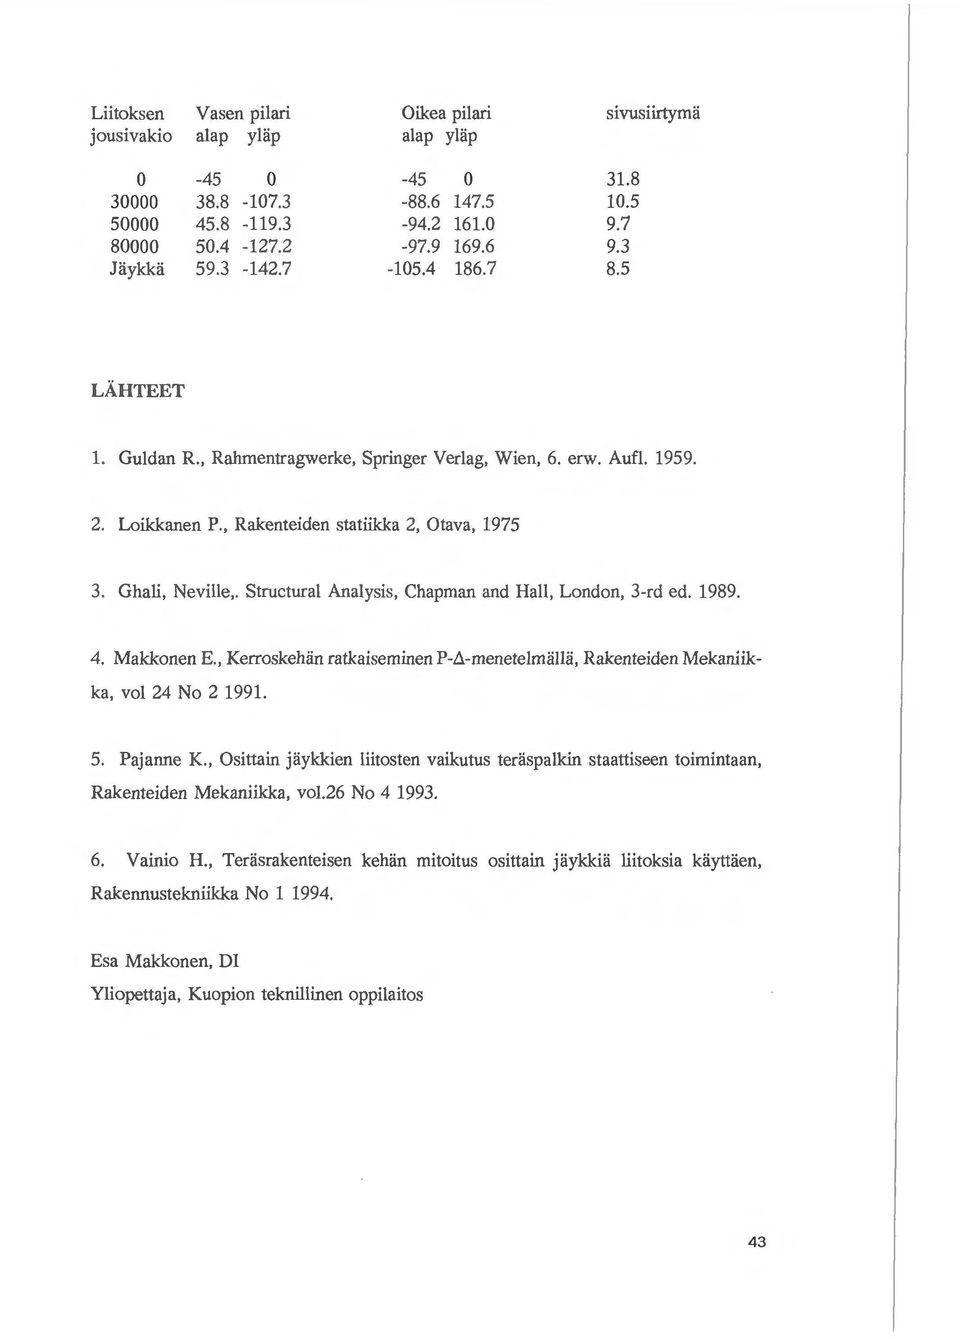 Structural Analysis, Chapman and Hall, London, 3-rd ed. 1989. 4. Makkonen E., Kerroskehan ratkaiseminen P-t.-menetelmalla, Rakenteiden Mekaniikka, vol 24 No 2 1991. 5. Pajanne K.